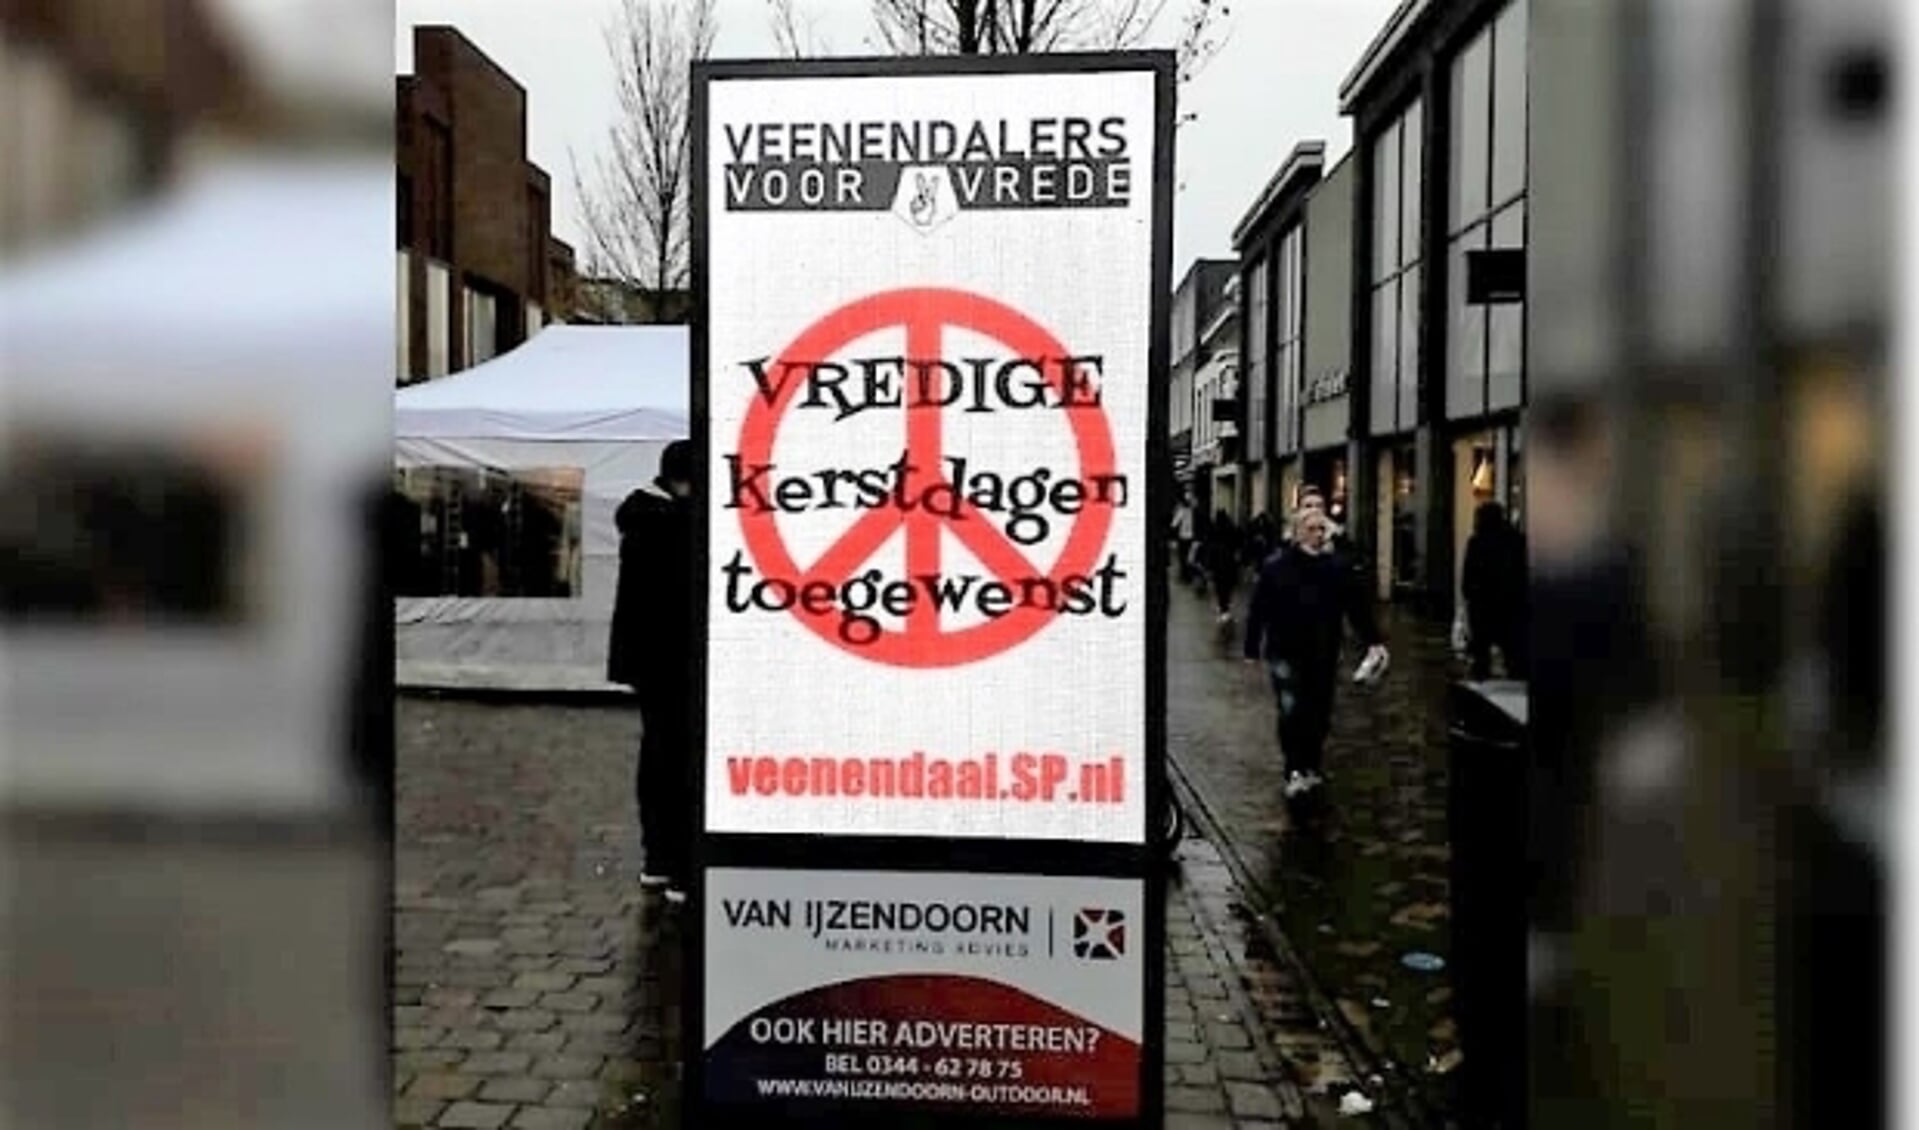 De SP heeft haar zendtijd op de digitale reclameborden beschikbaar gesteld aan Veenendalers Voor Vrede.